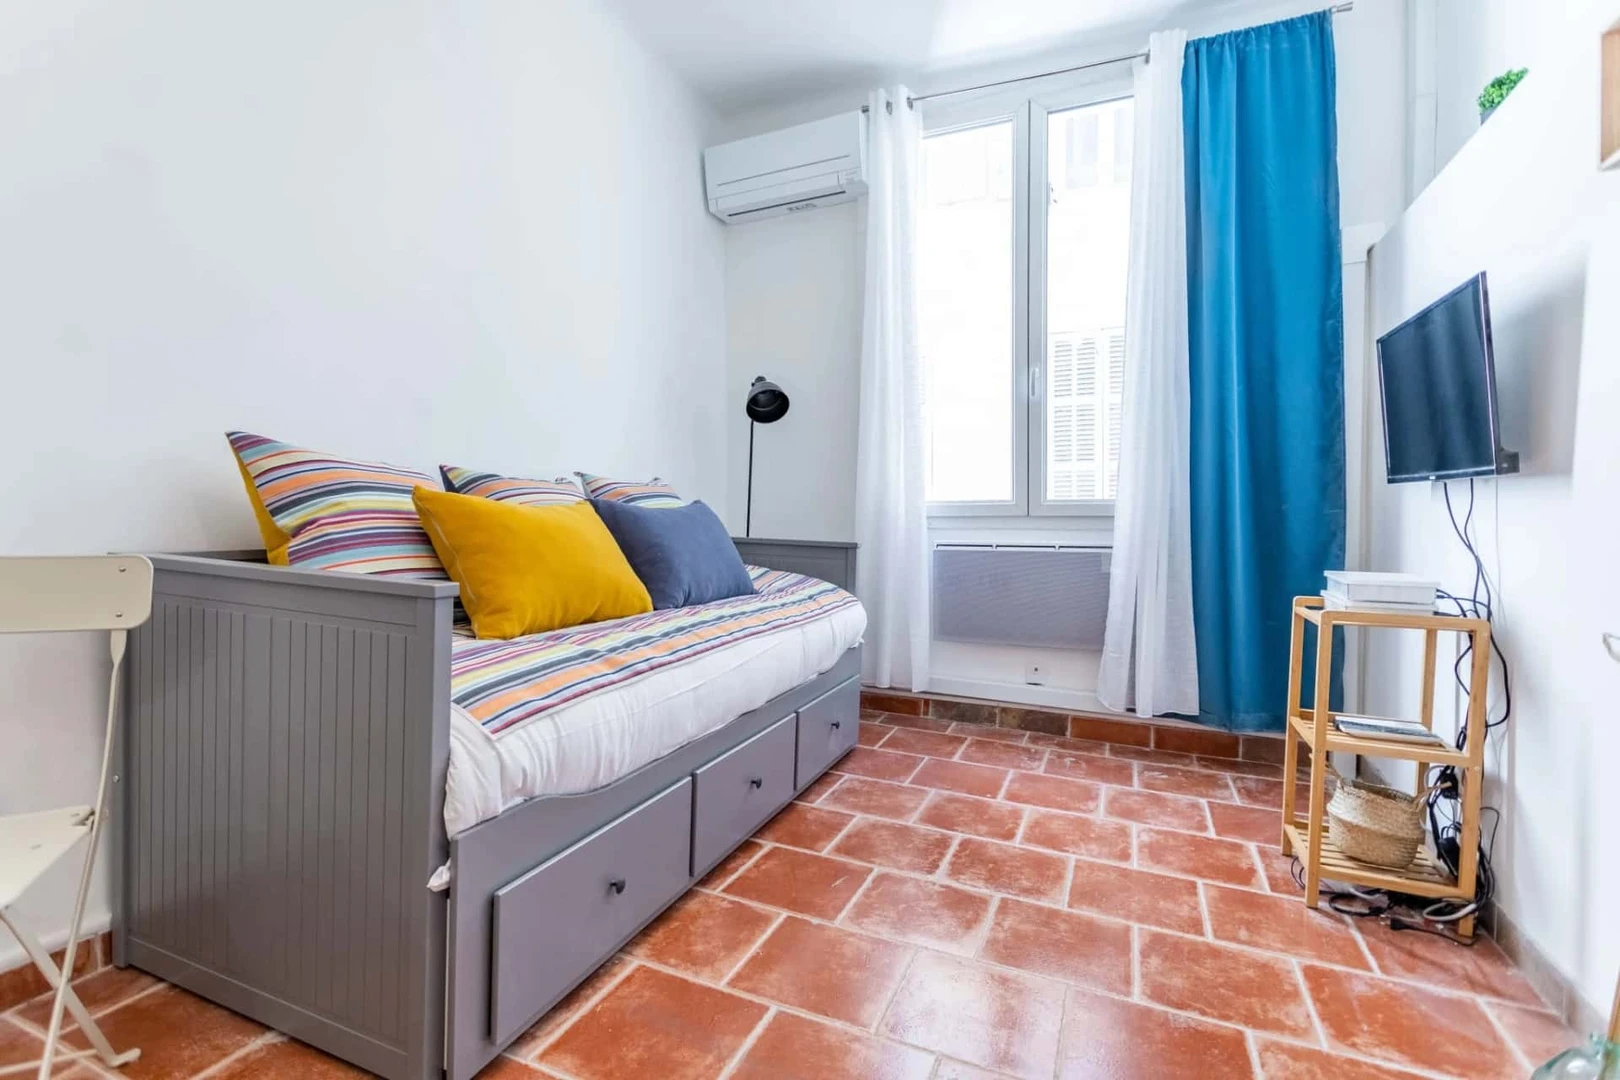 Apartamento totalmente mobilado em Marselha